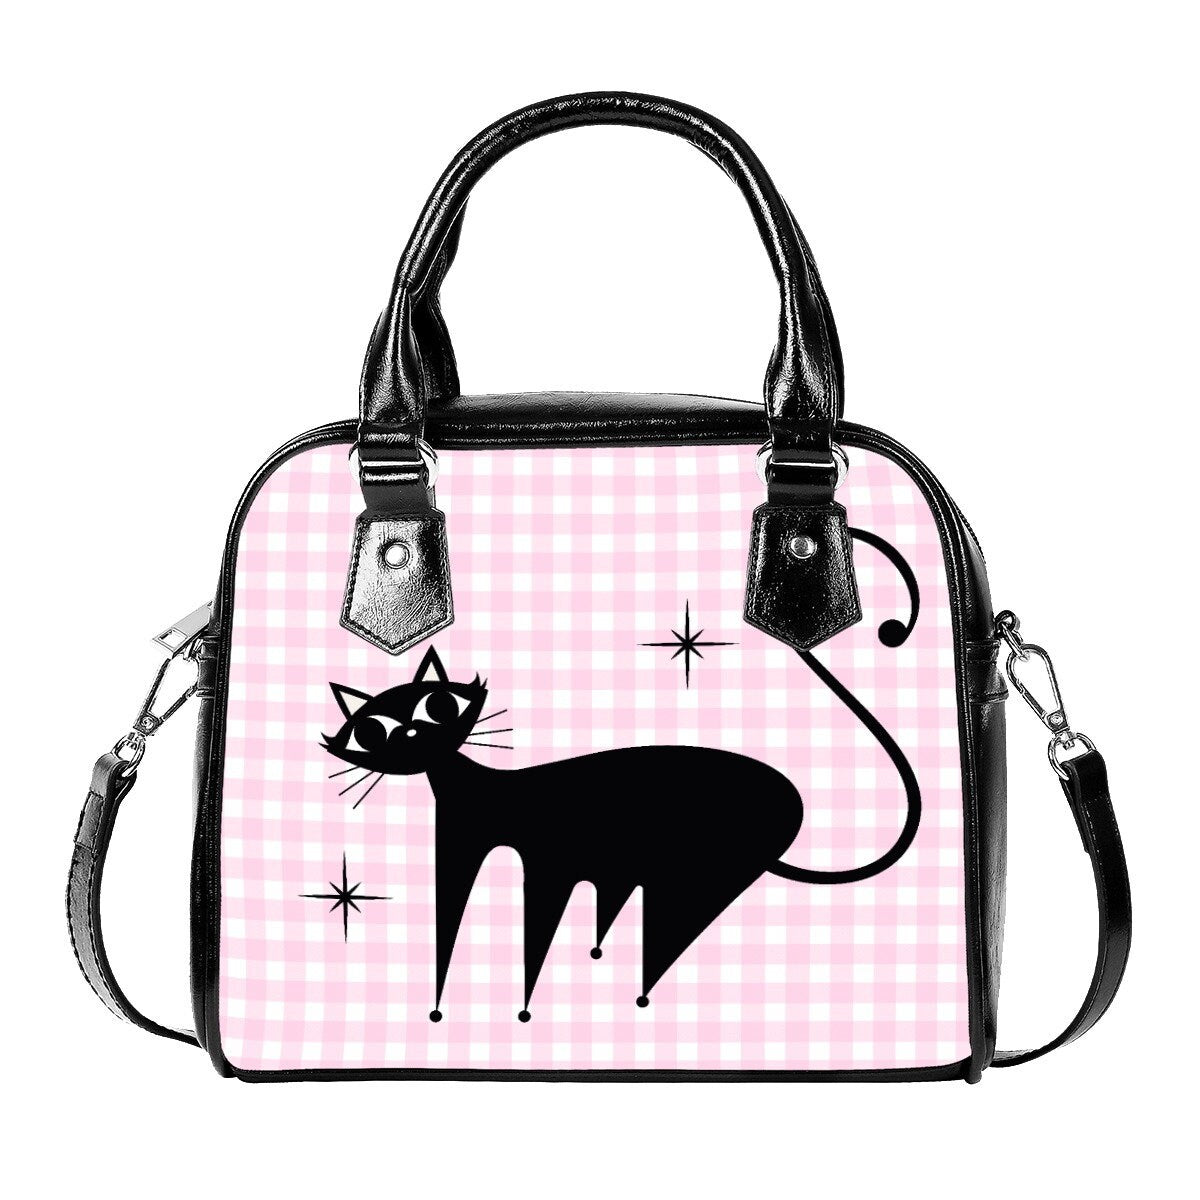 50s Retro Cat Handbag, Retro Bag, Retro Handbag, Cat Purse, Pink Gingham Purse,Women's Bags,Women's Purse,Animal Print Handbag,Small Handbag